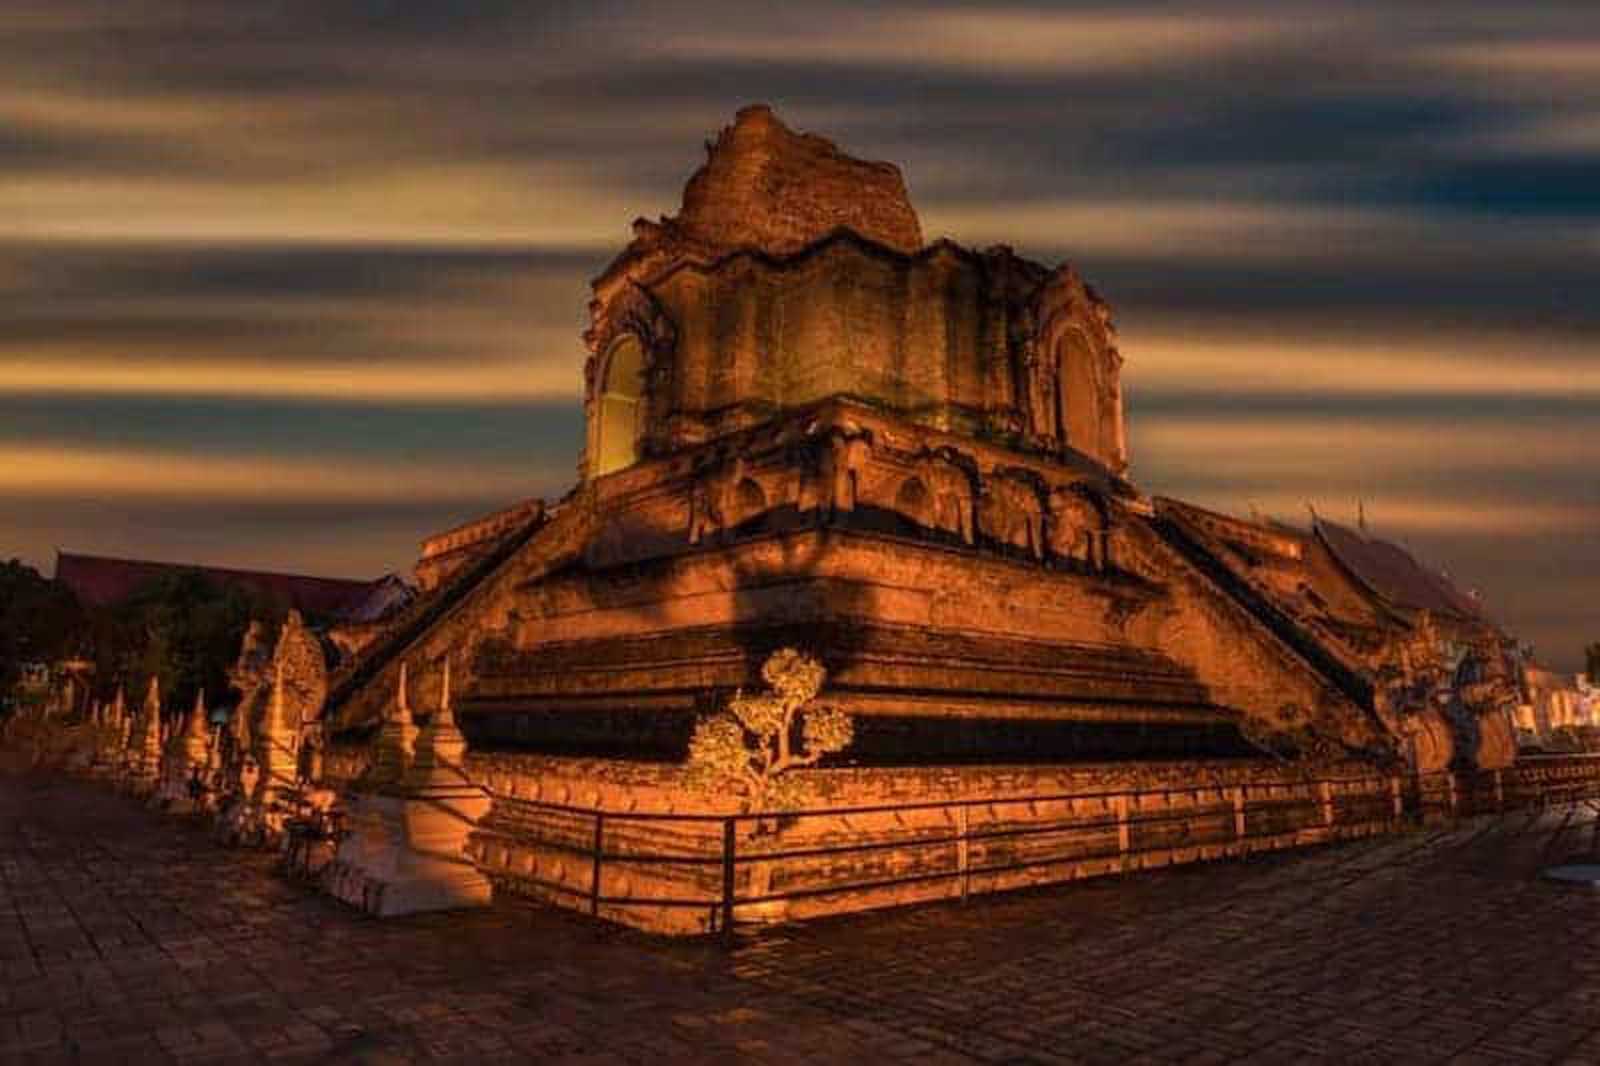 chiang mai temple at night